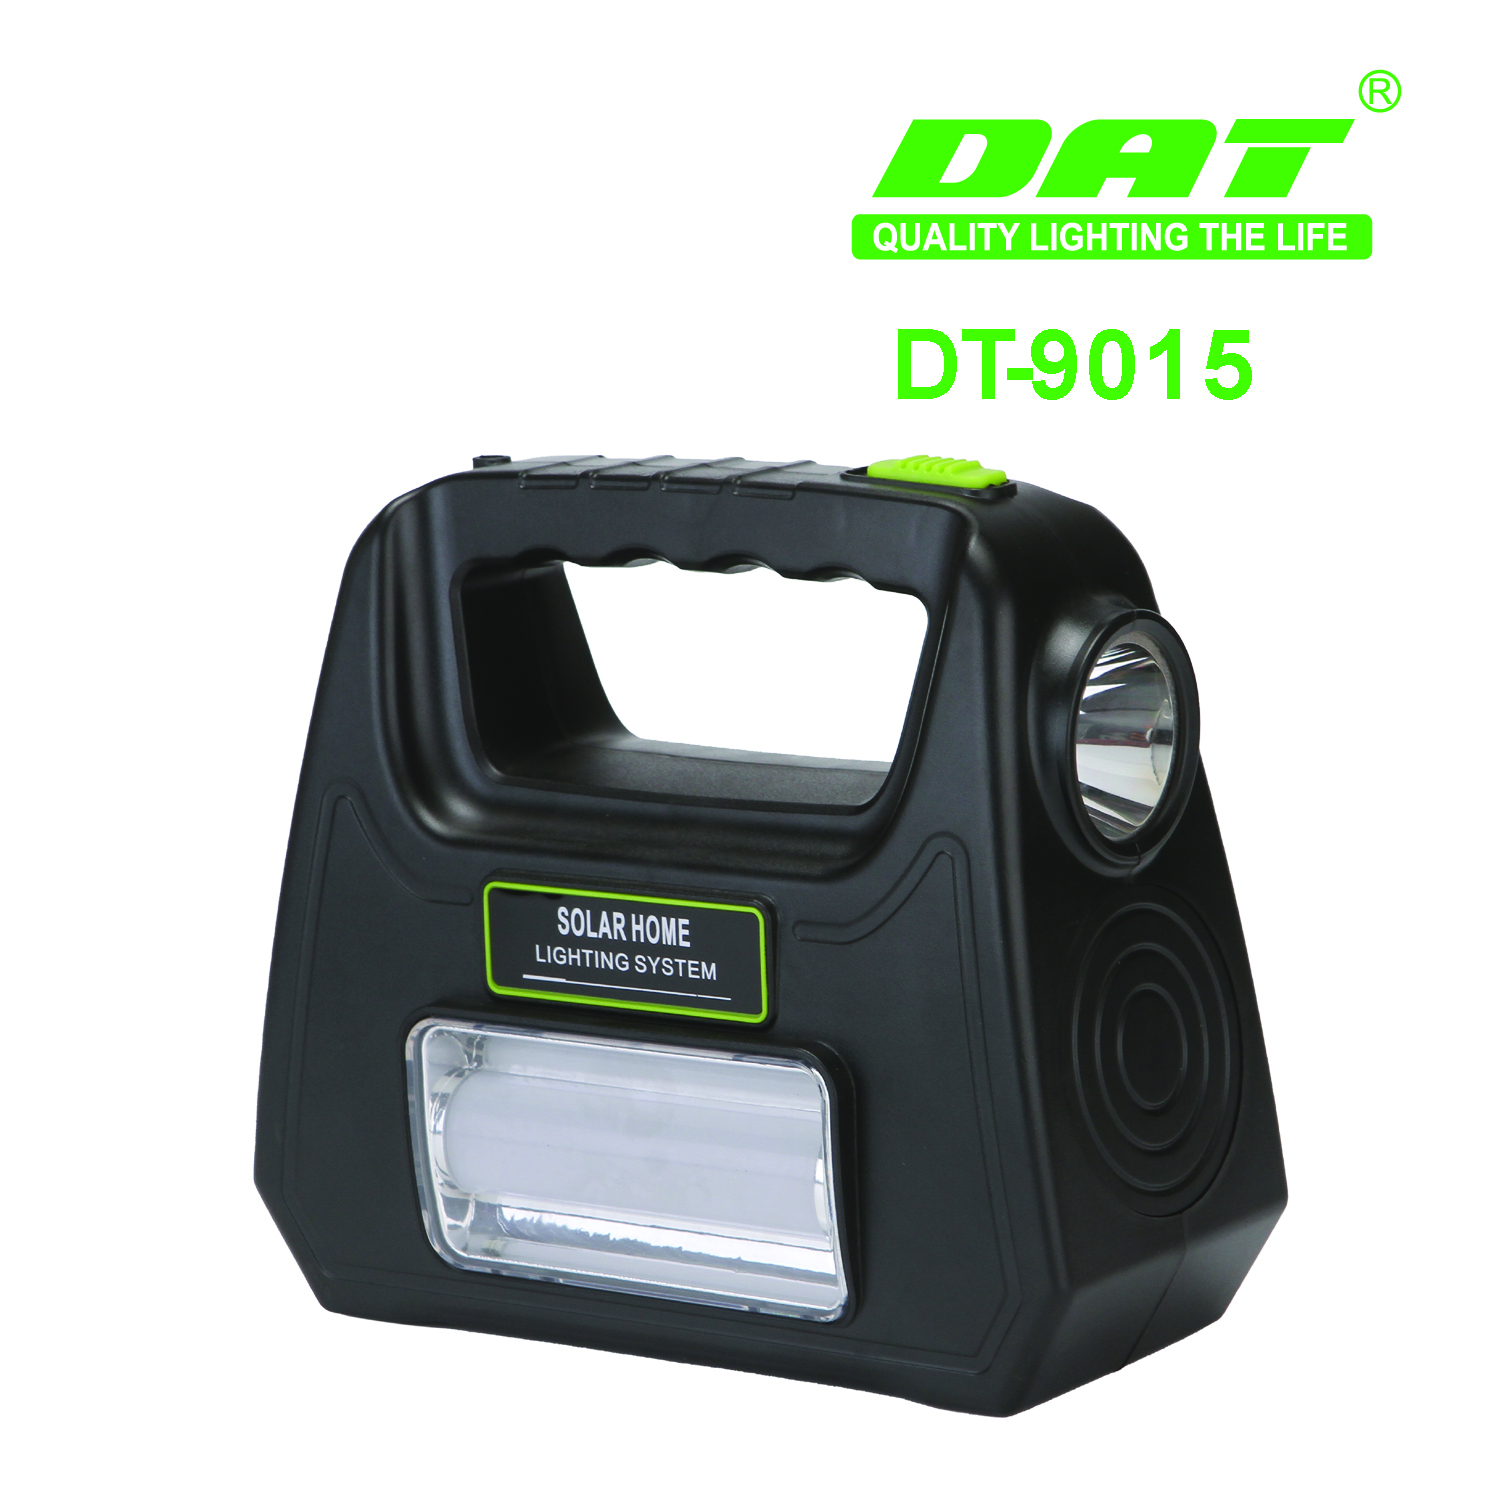 DT-9015太阳能照明小系统可充电野营灯带usb线便携式户外照明LED灯详情图2